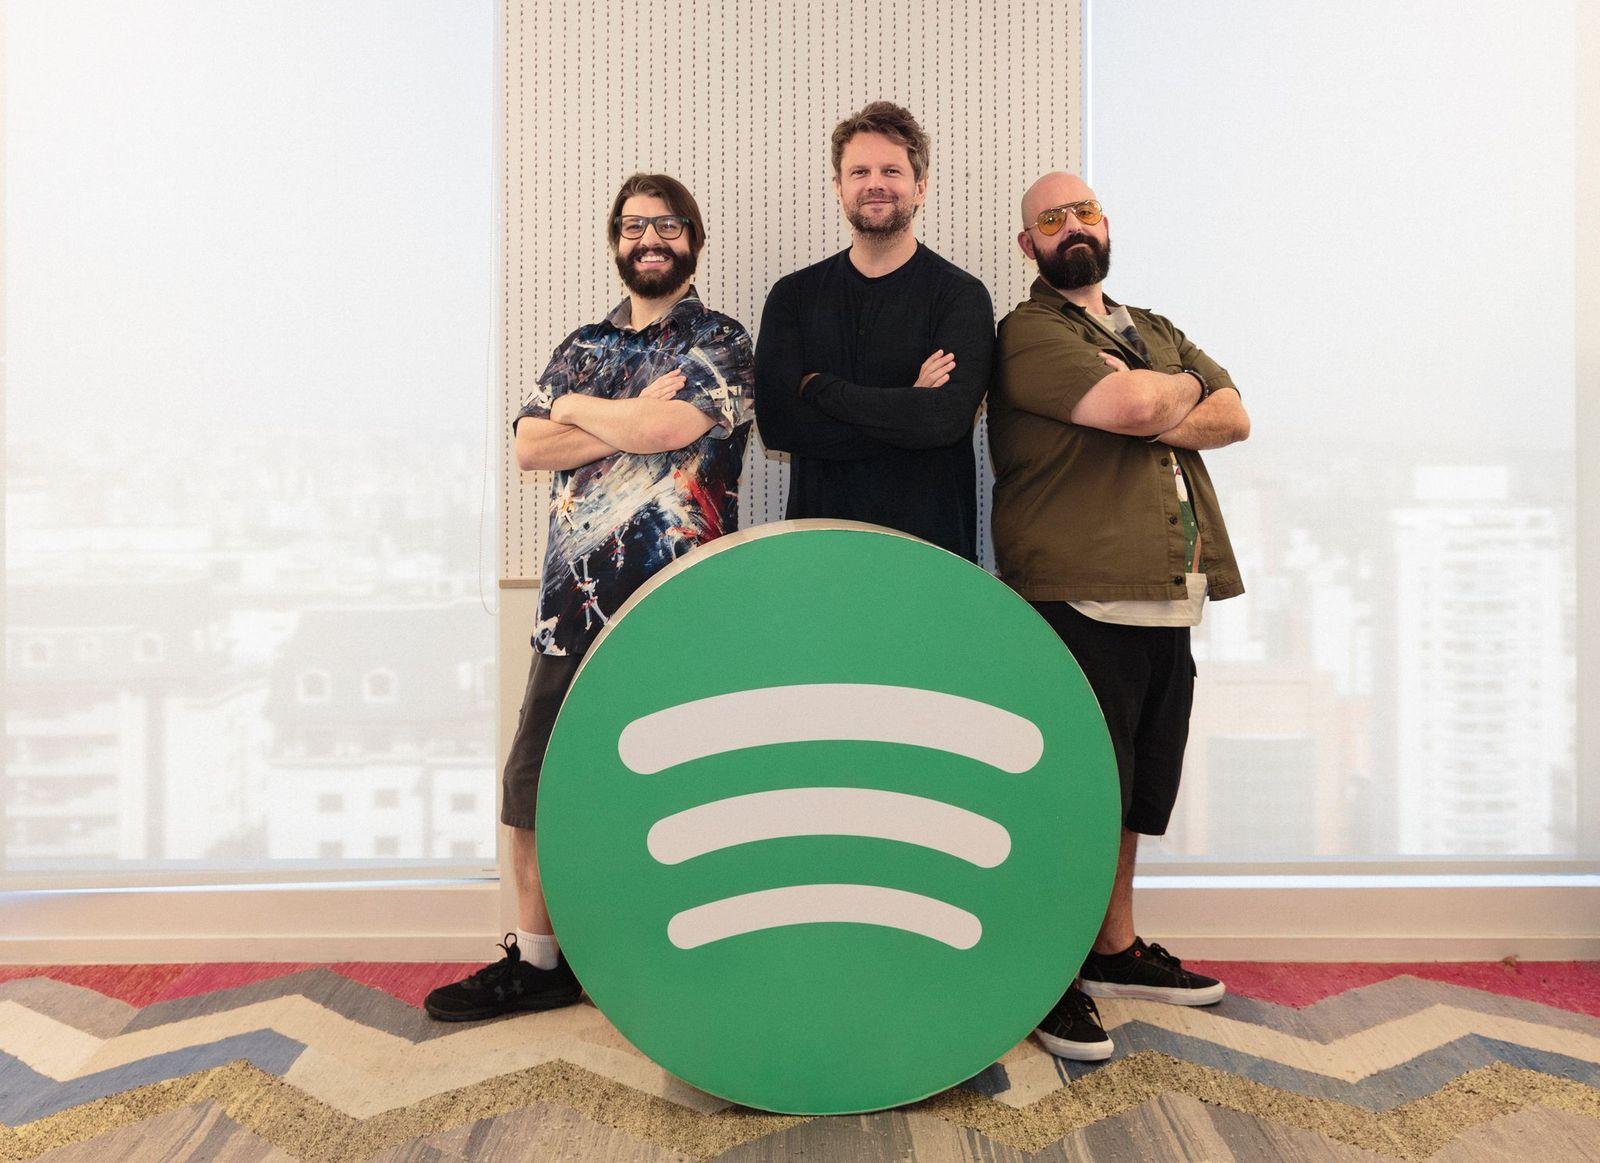 França e o Labirinto: Audiossérie Original do Spotify traz elenco de peso, incluindo Igão, Mitico, Antonio Tabet e Luiz Carlos Persy